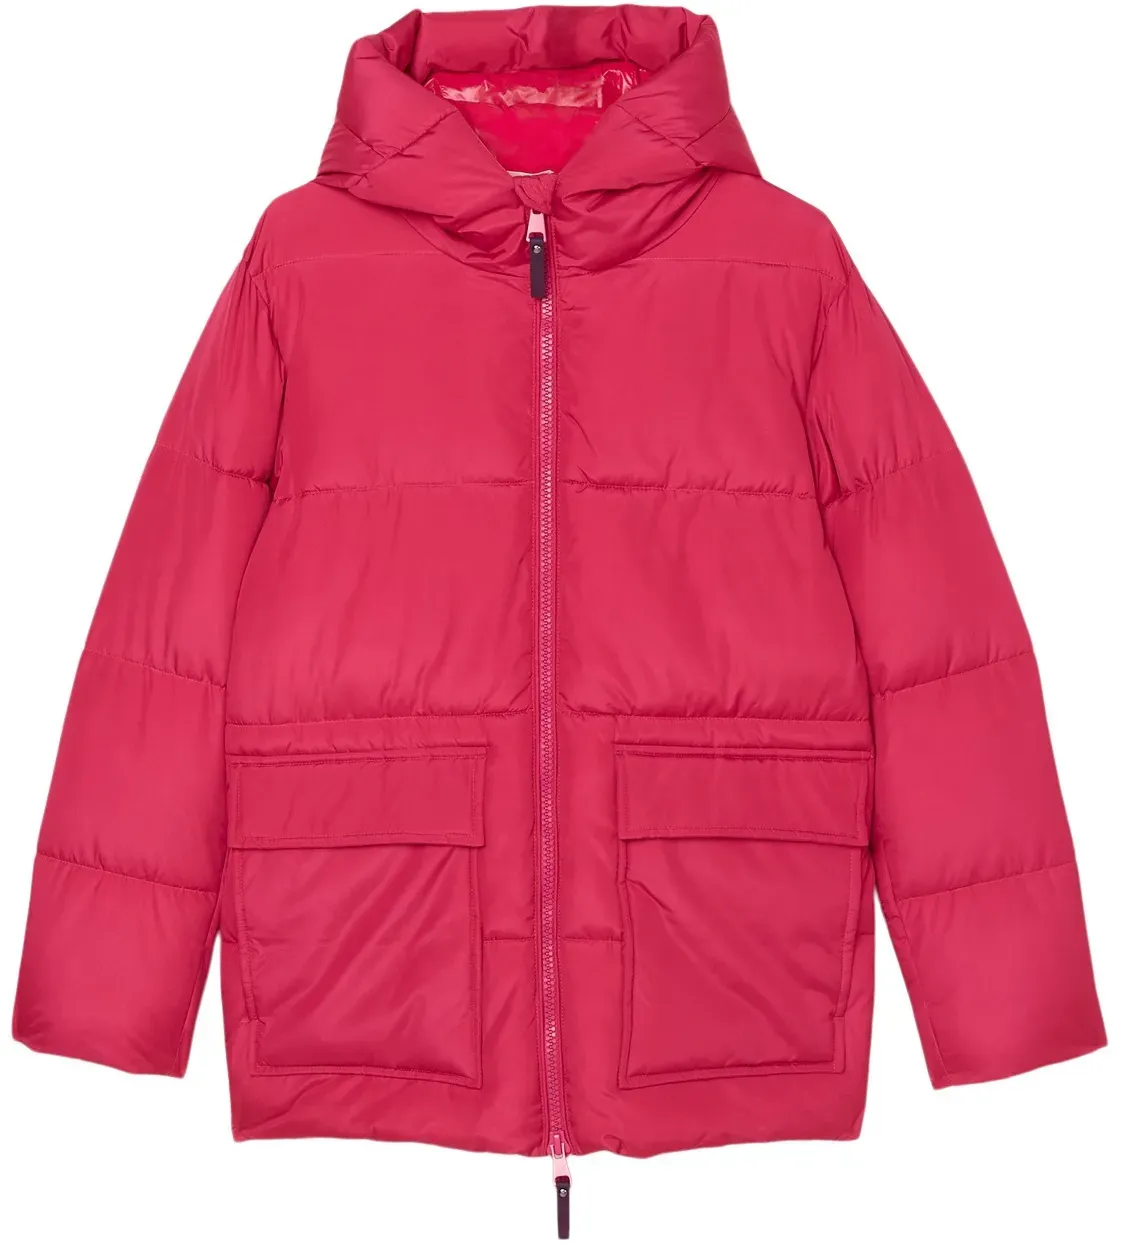 Outdoorjacke MARC O'POLO "mit wasserabweisender Oberfläche" Gr. 164, pink Mädchen Jacken Regenjacken